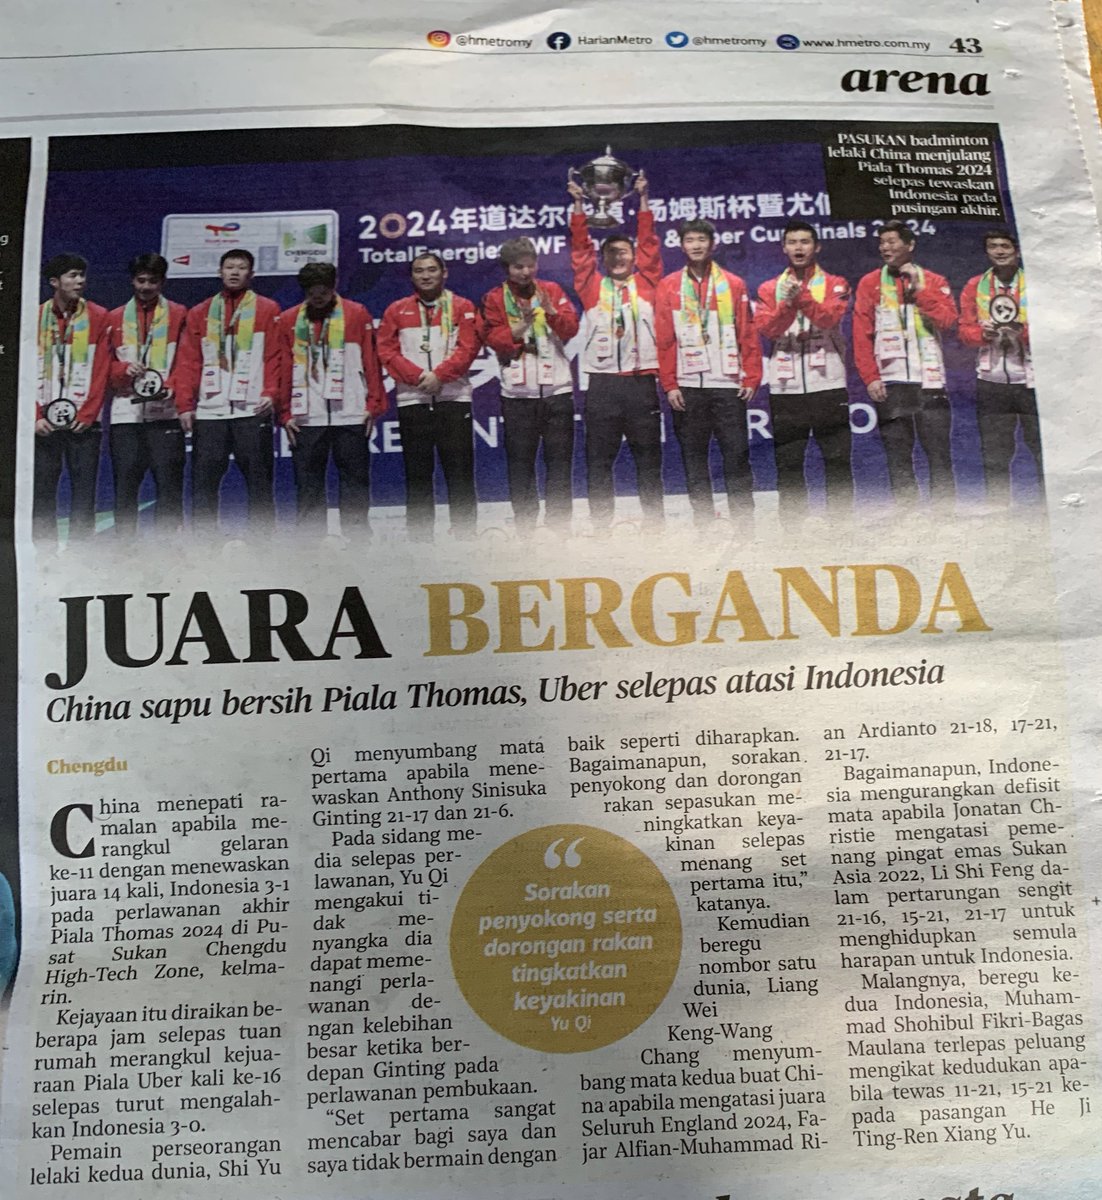 Harini kedua selepas podium Thomas Cup aku masih cari part malaysia dapat bronze medal thomas cup tapi yang masuk newspaper harini CHINA JUARA BERGANDA………………………..